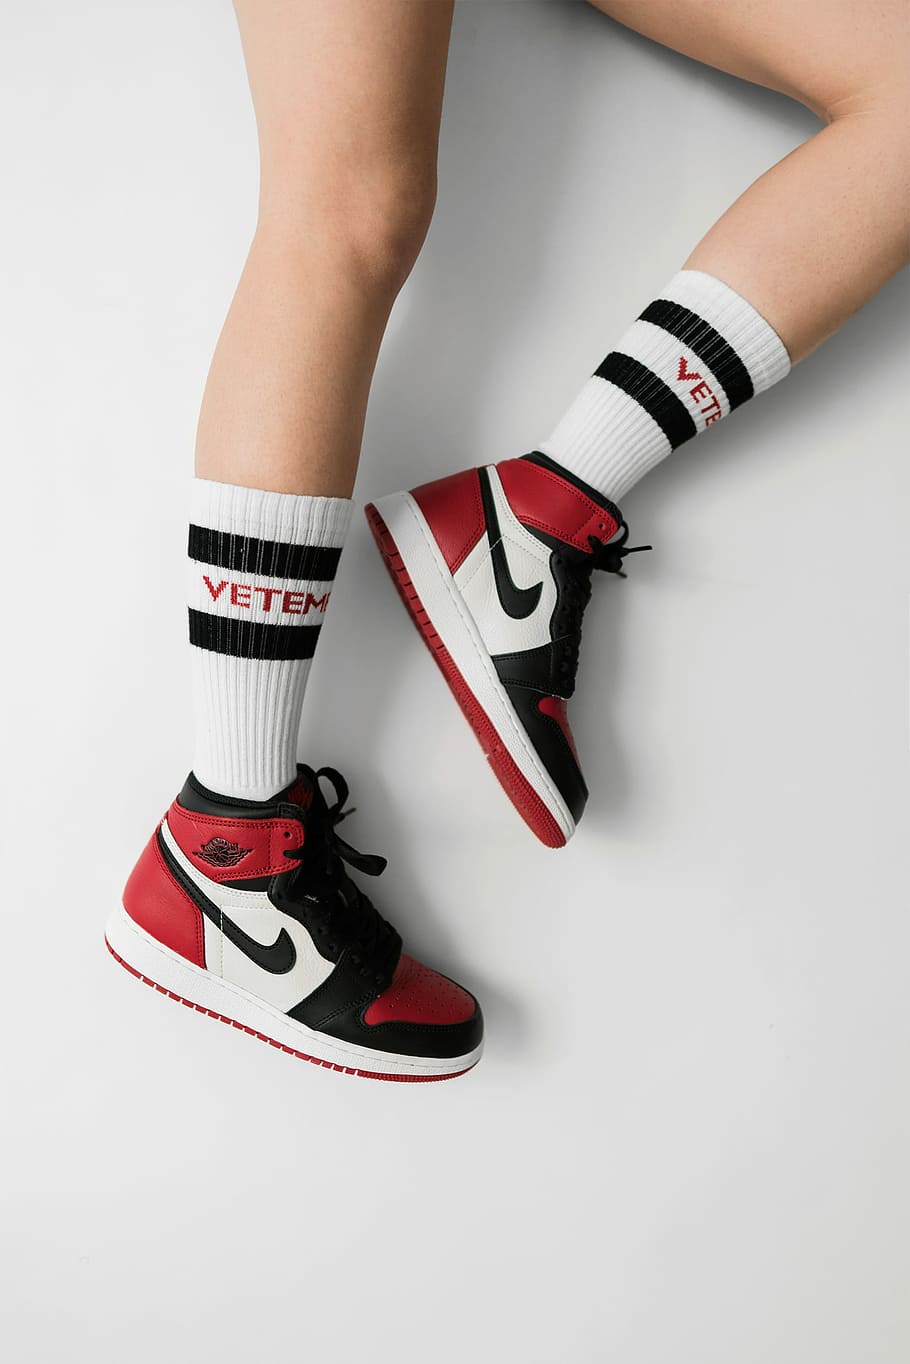 HD Wallpaper: Person Wearing Pair Of Black Toe Air Jordan 1's, White Red And Black Nike Air Jordan 1's